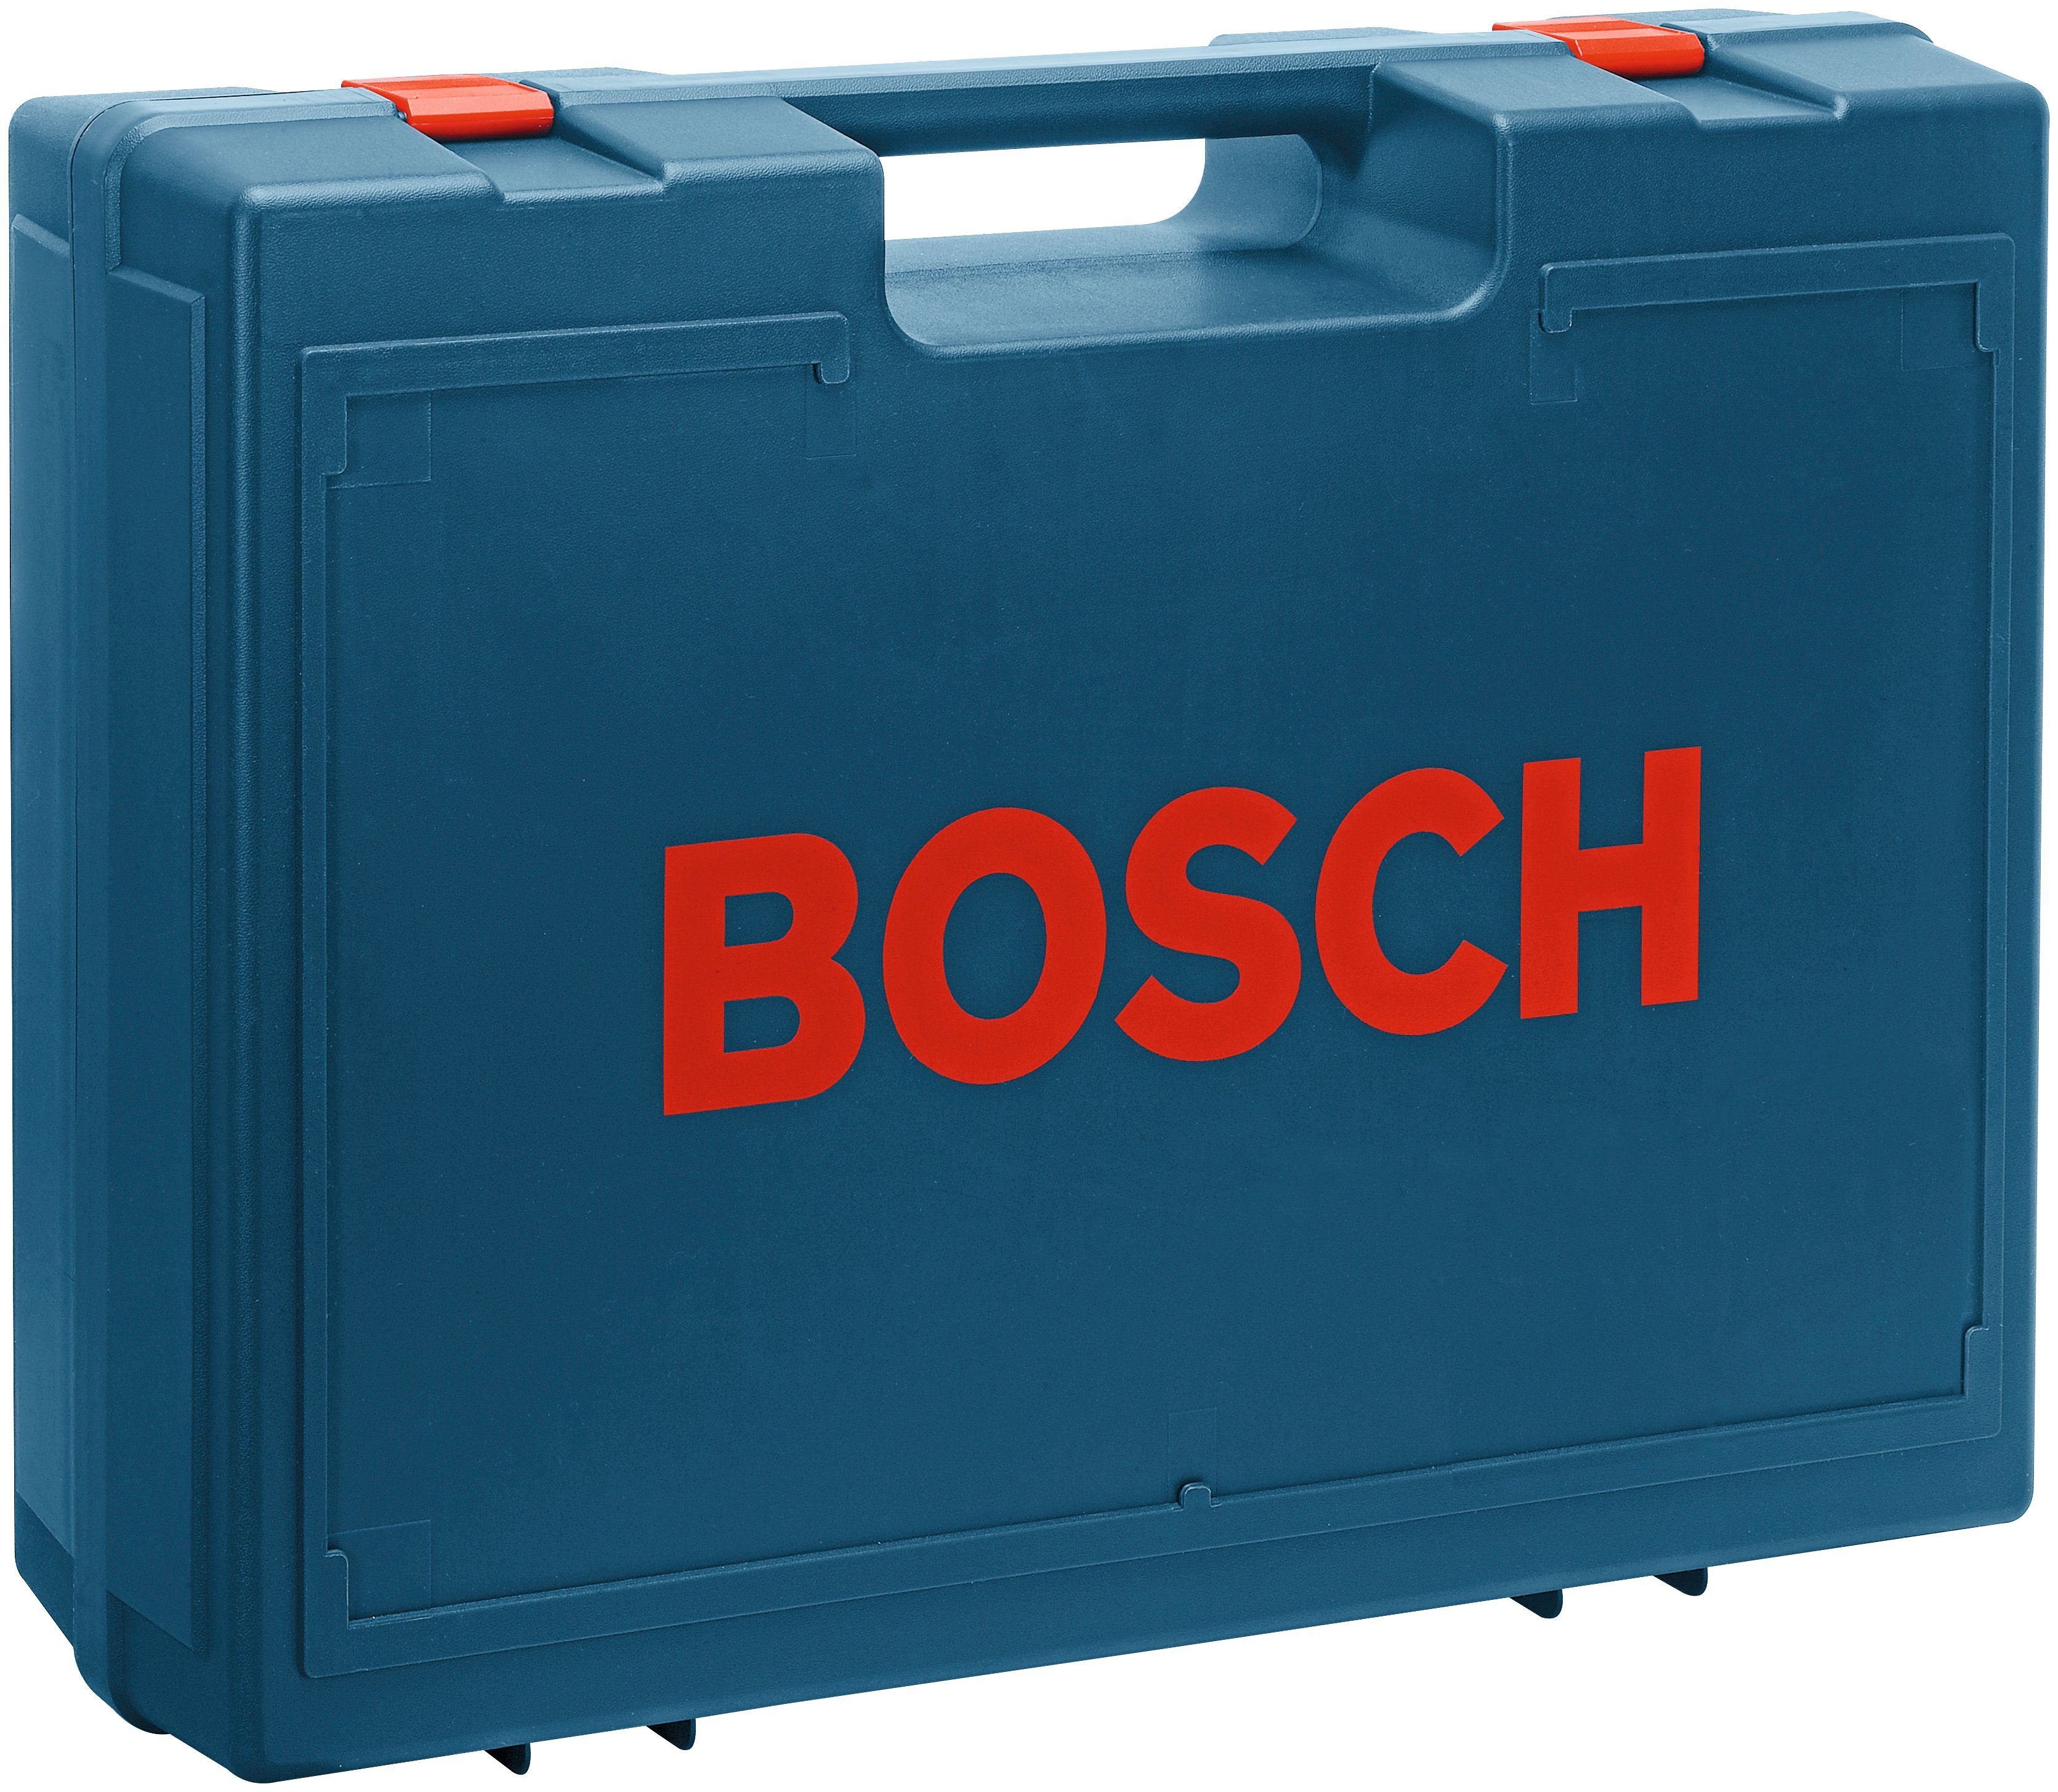 125-1 24000 AE, U/min Bosch Professional Exzenterschleifer GEX